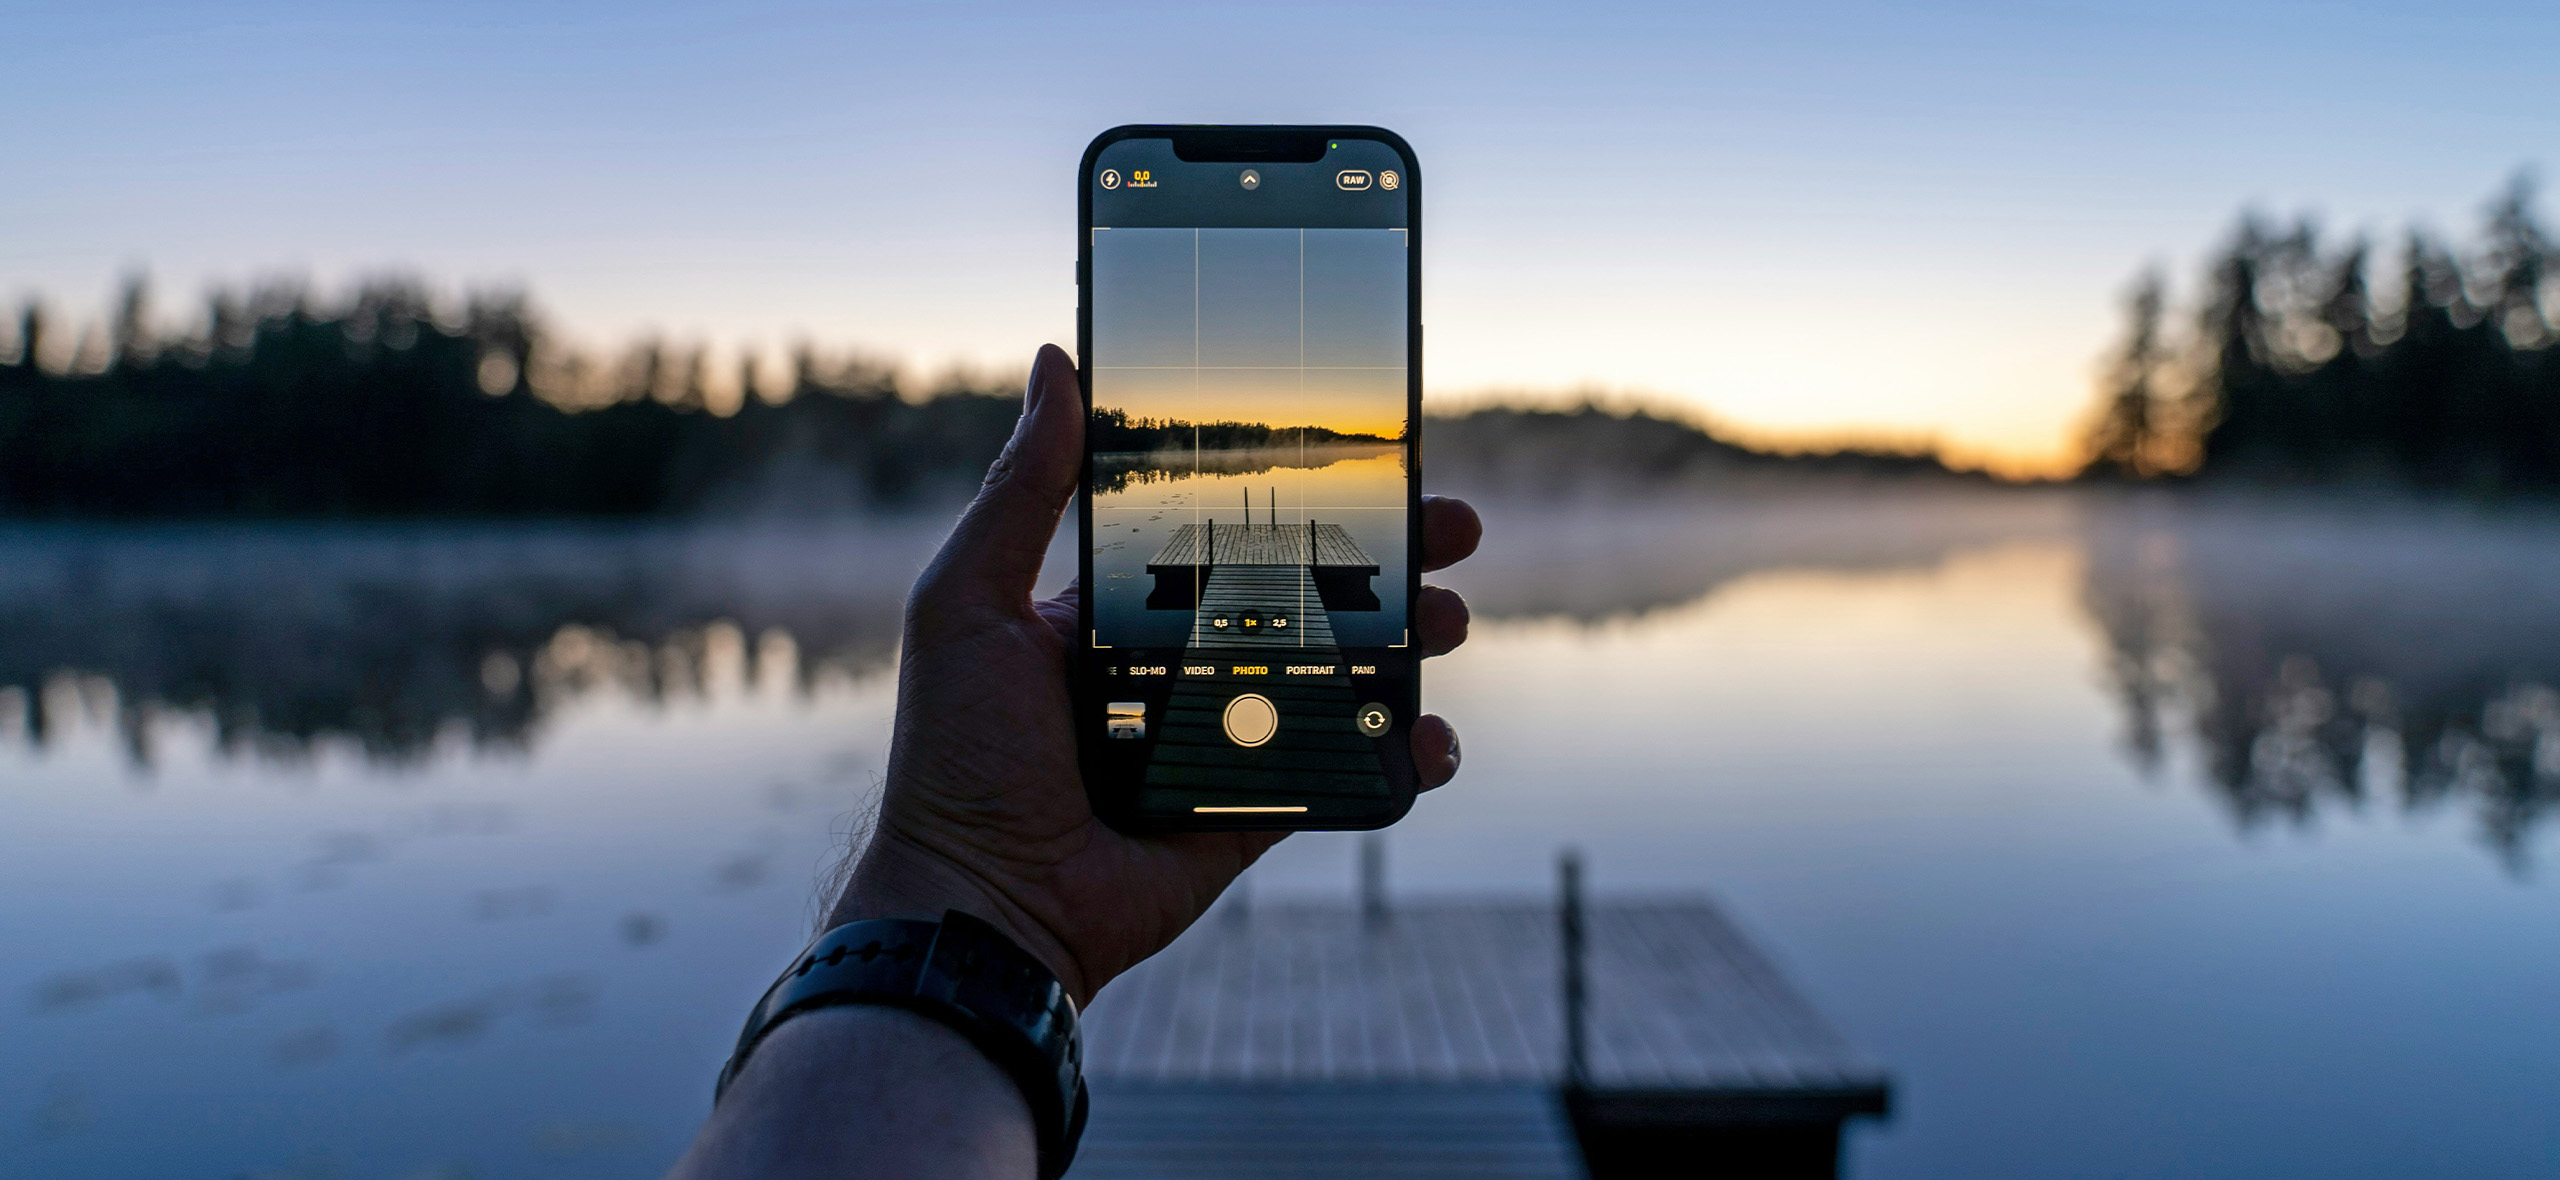 Как уменьшить фото на андроиде: простые способы изменить размер изображения